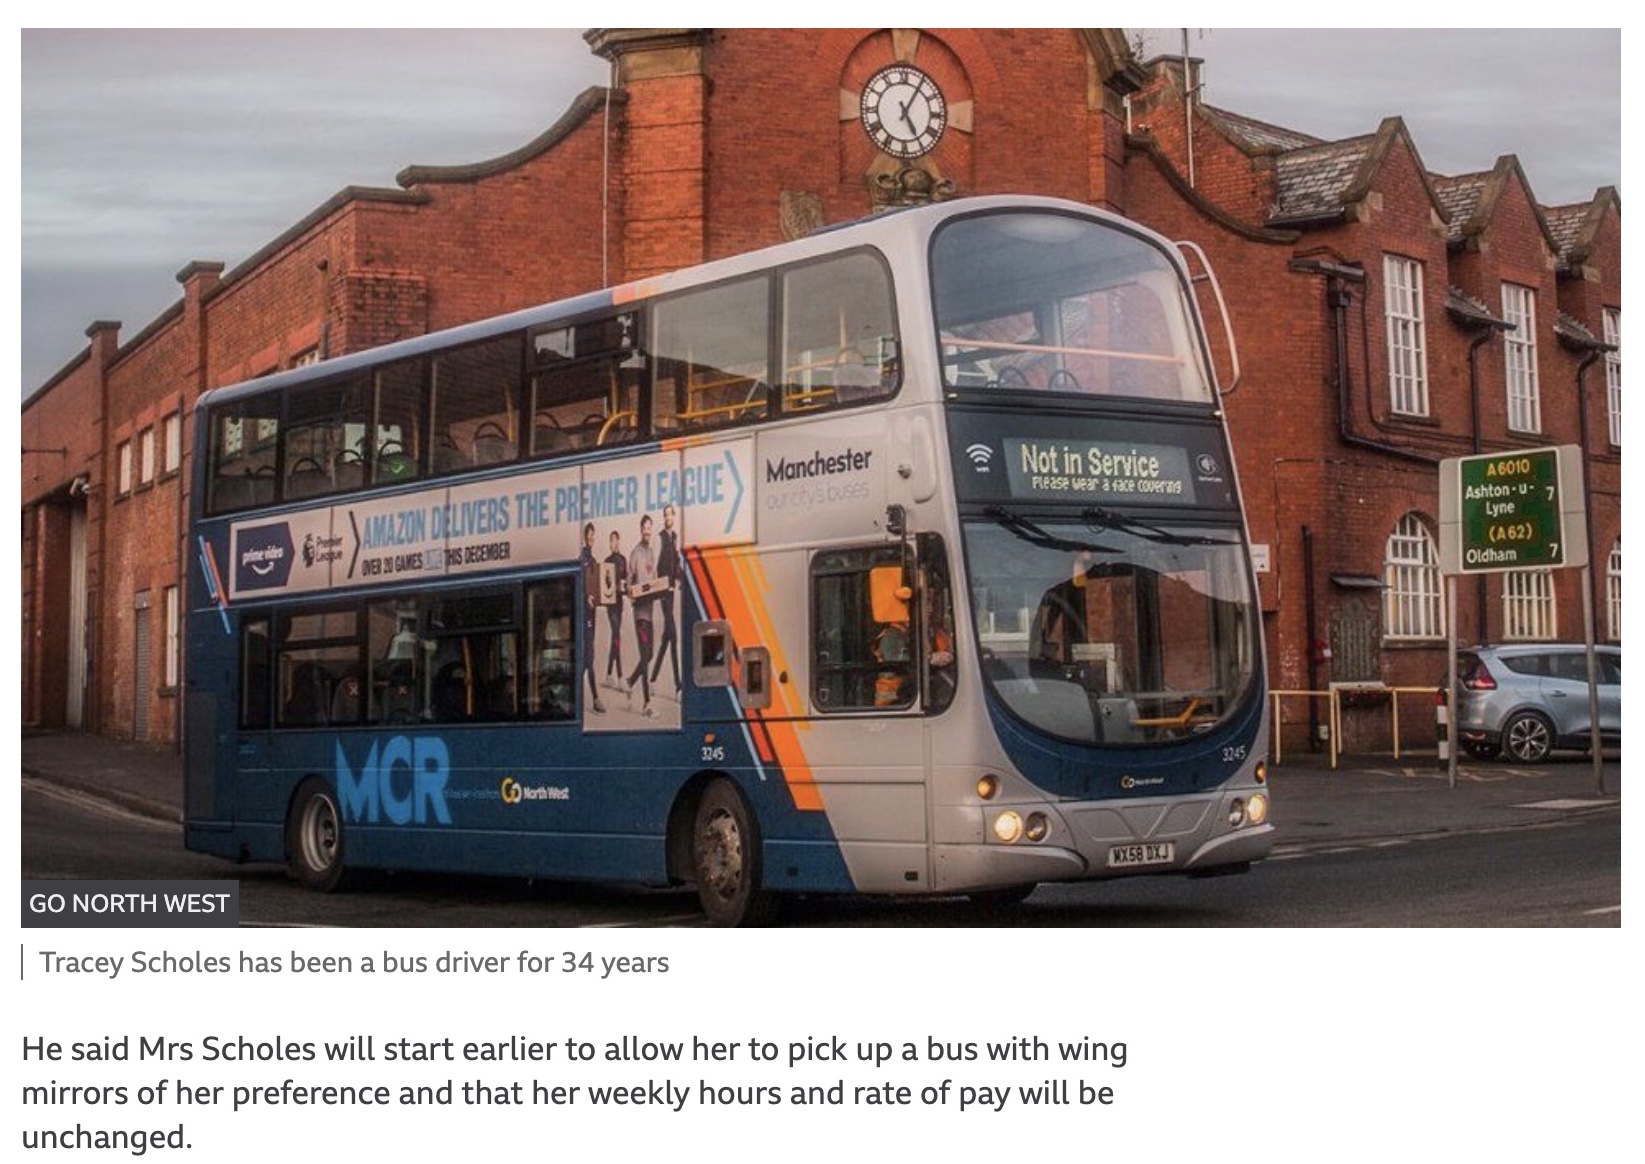 トレーシーさんが34年間運転してきた「Go North West」のバス（画像は『BBC　2022年1月18日付「Rochdale bus driver reinstated after height issue resolved」（GO NORTH WEST）』のスクリーンショット）